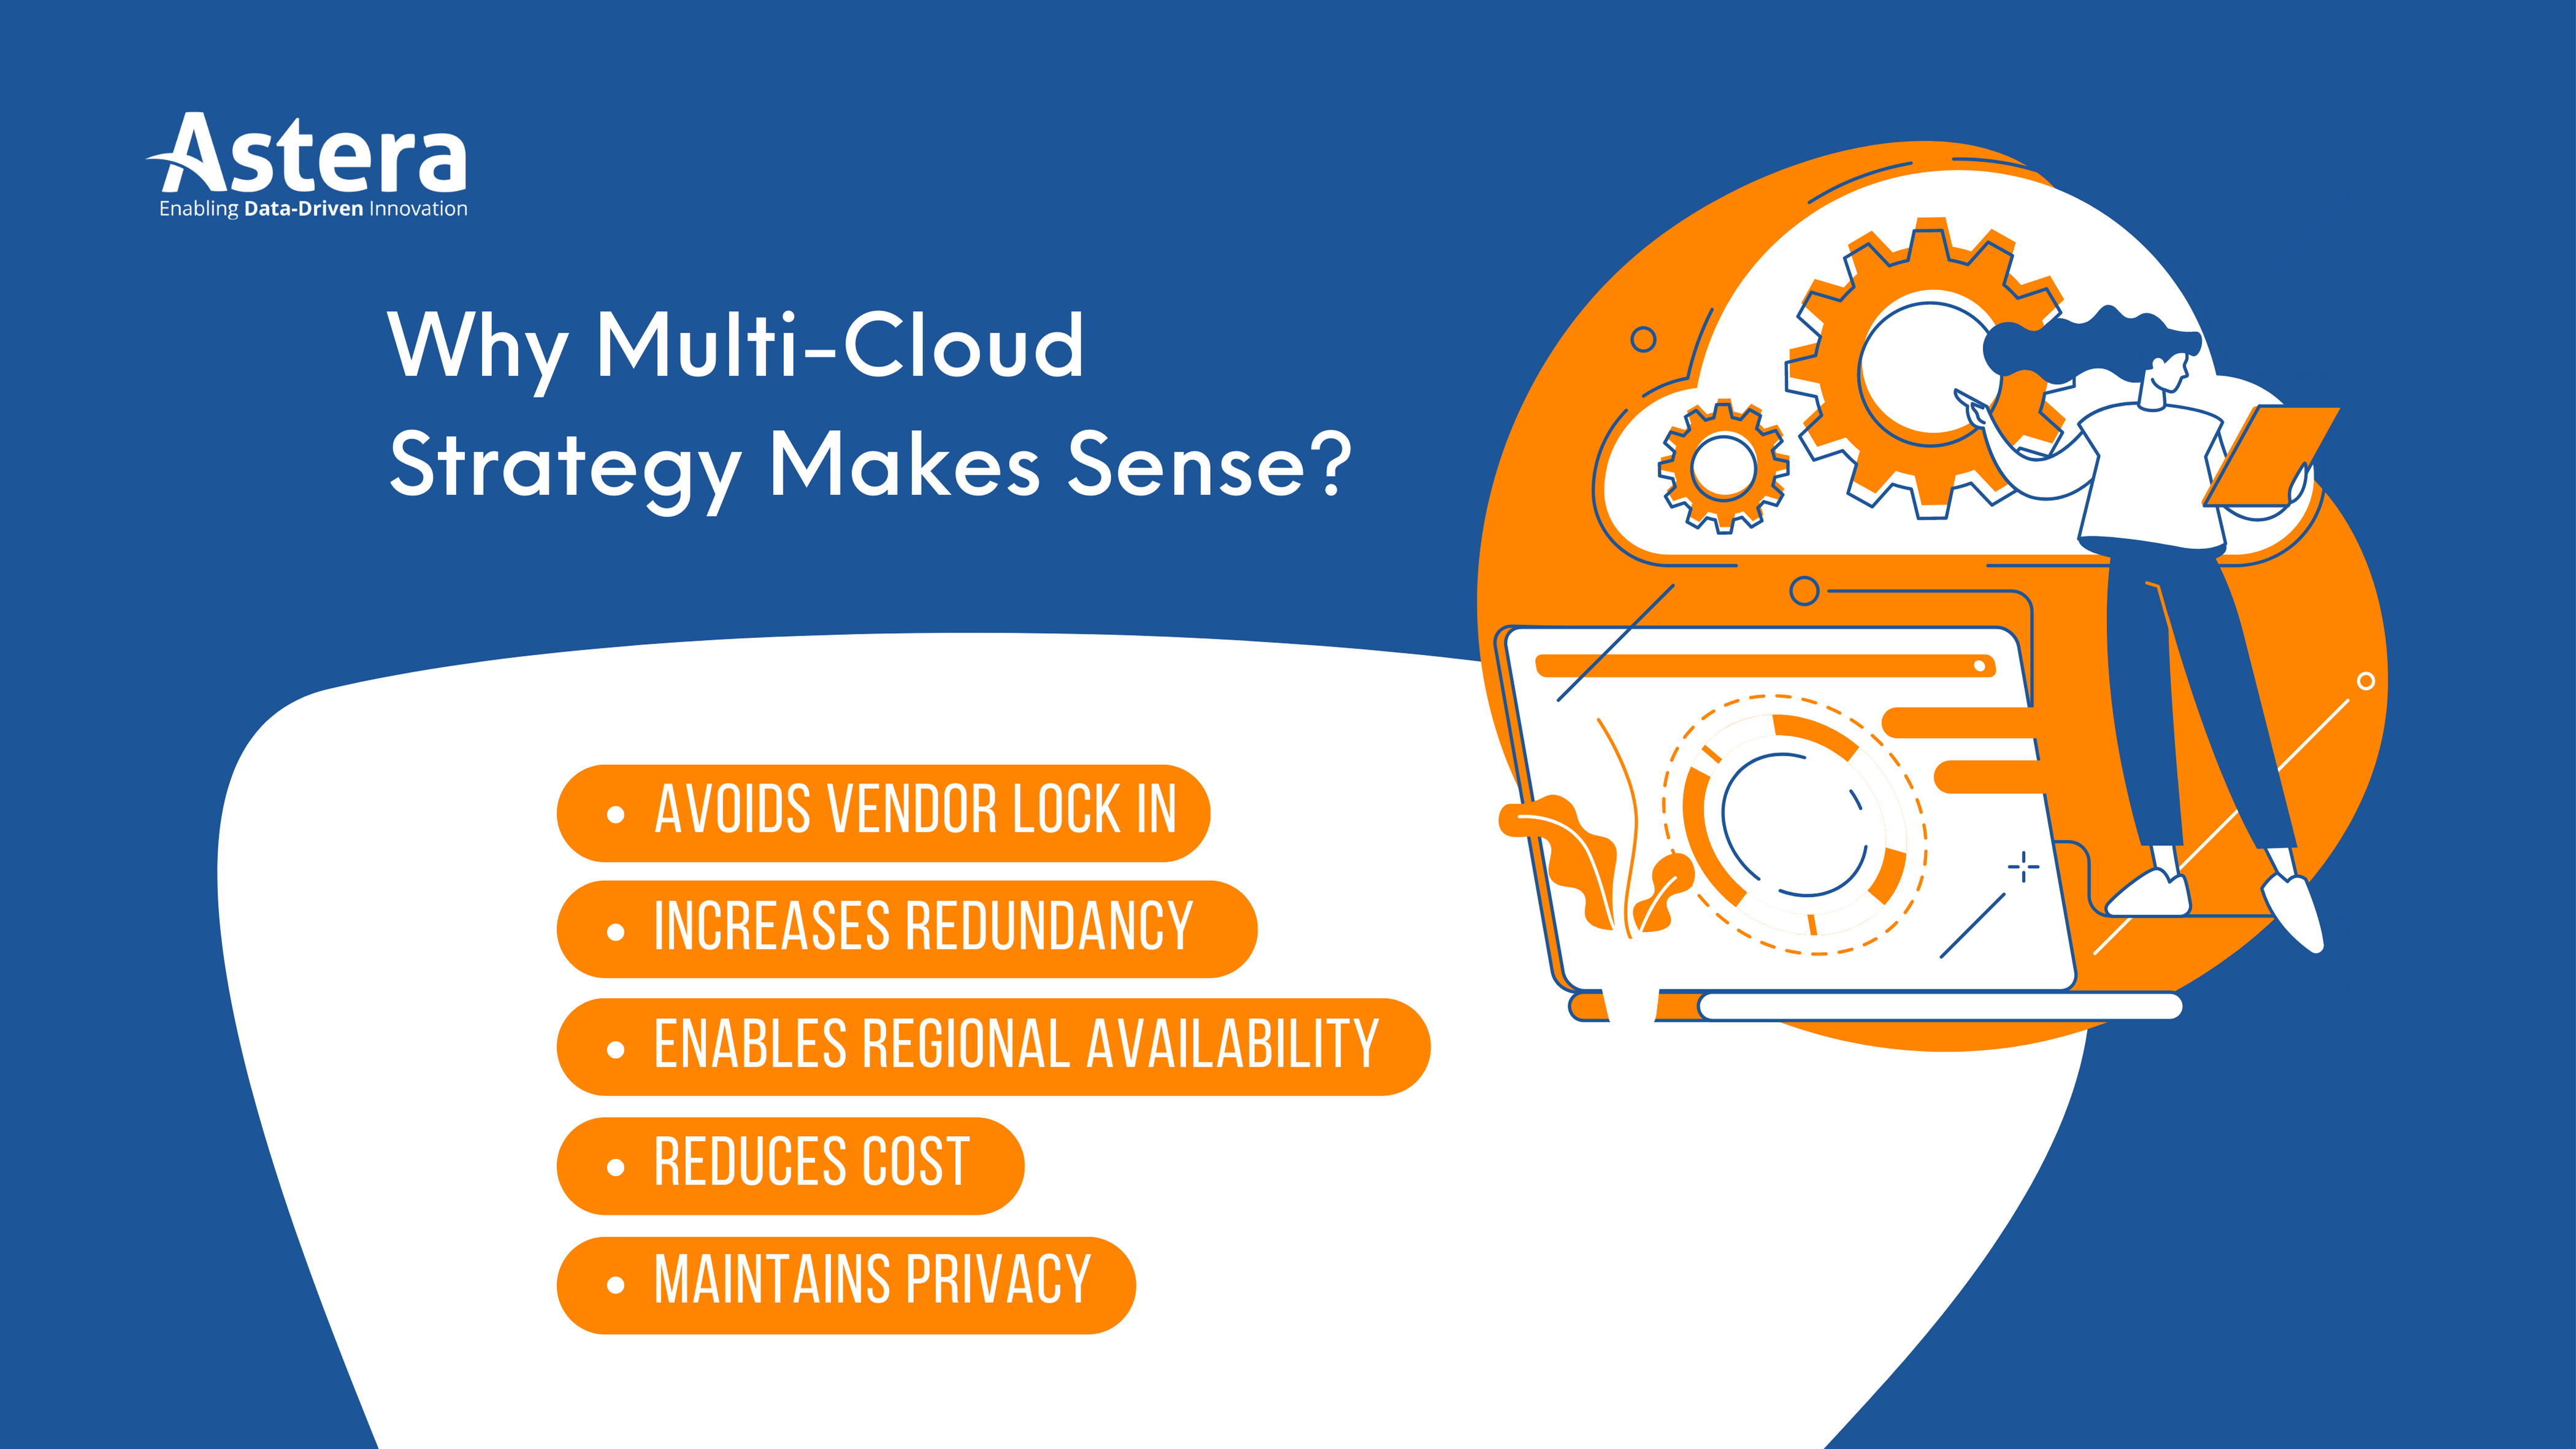 Warum eine Multi-Cloud-Strategie sinnvoll ist